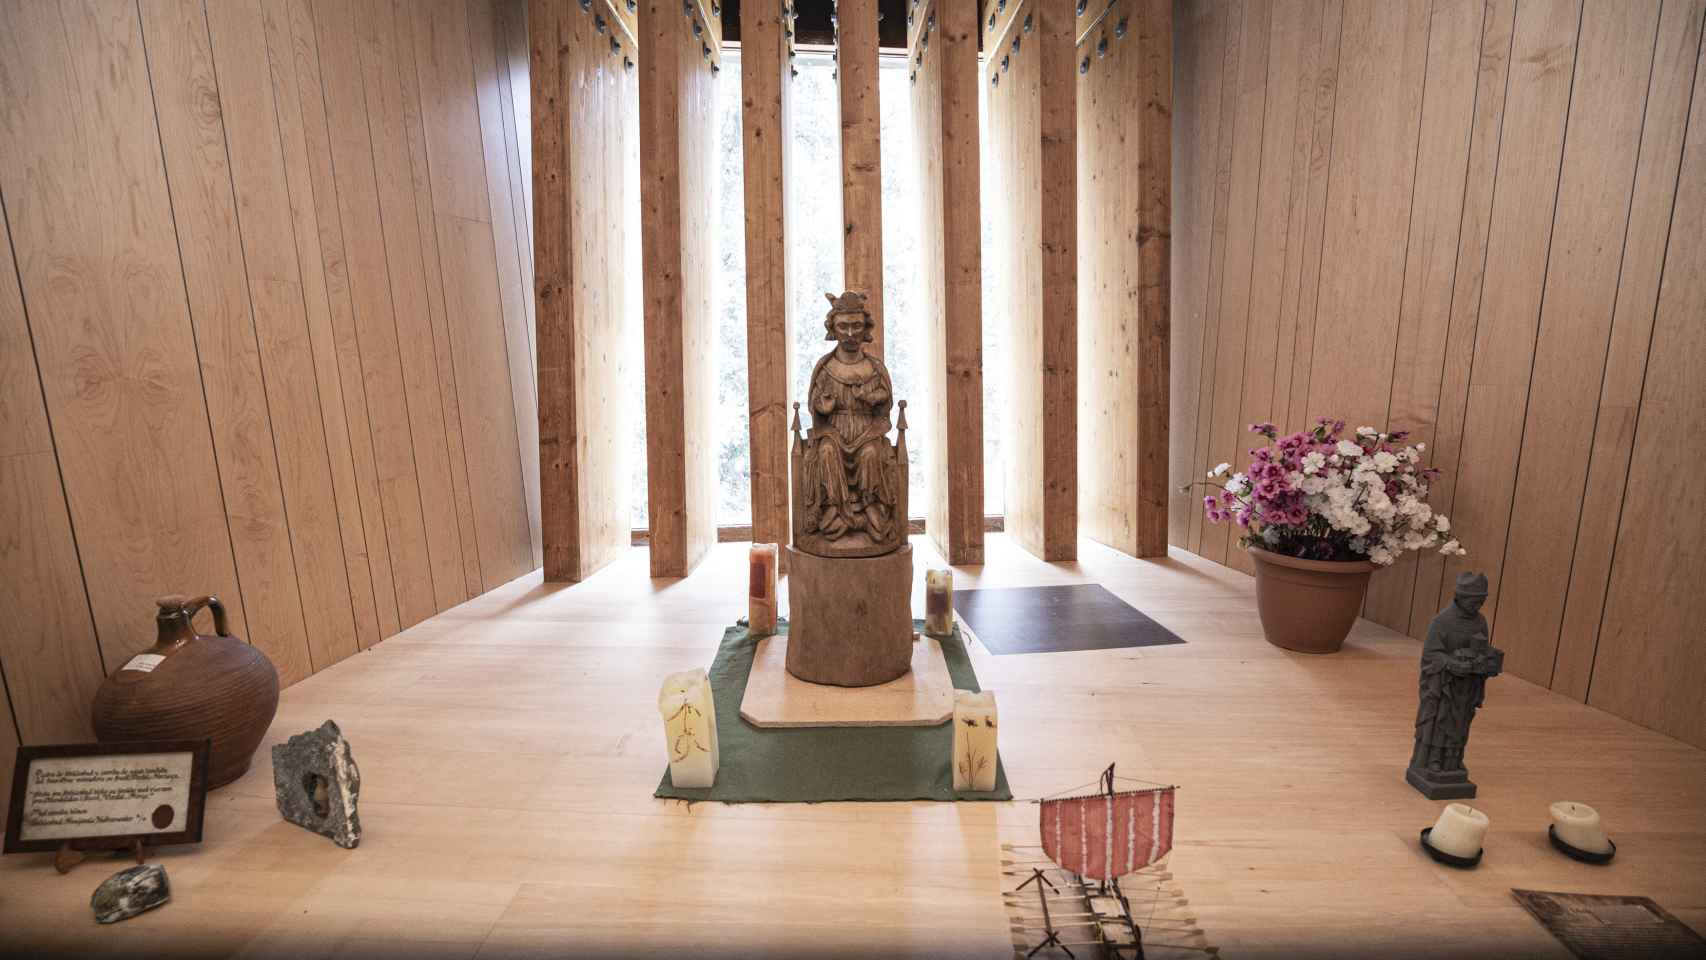 Vista de una estatua de madera que representa a San Olav